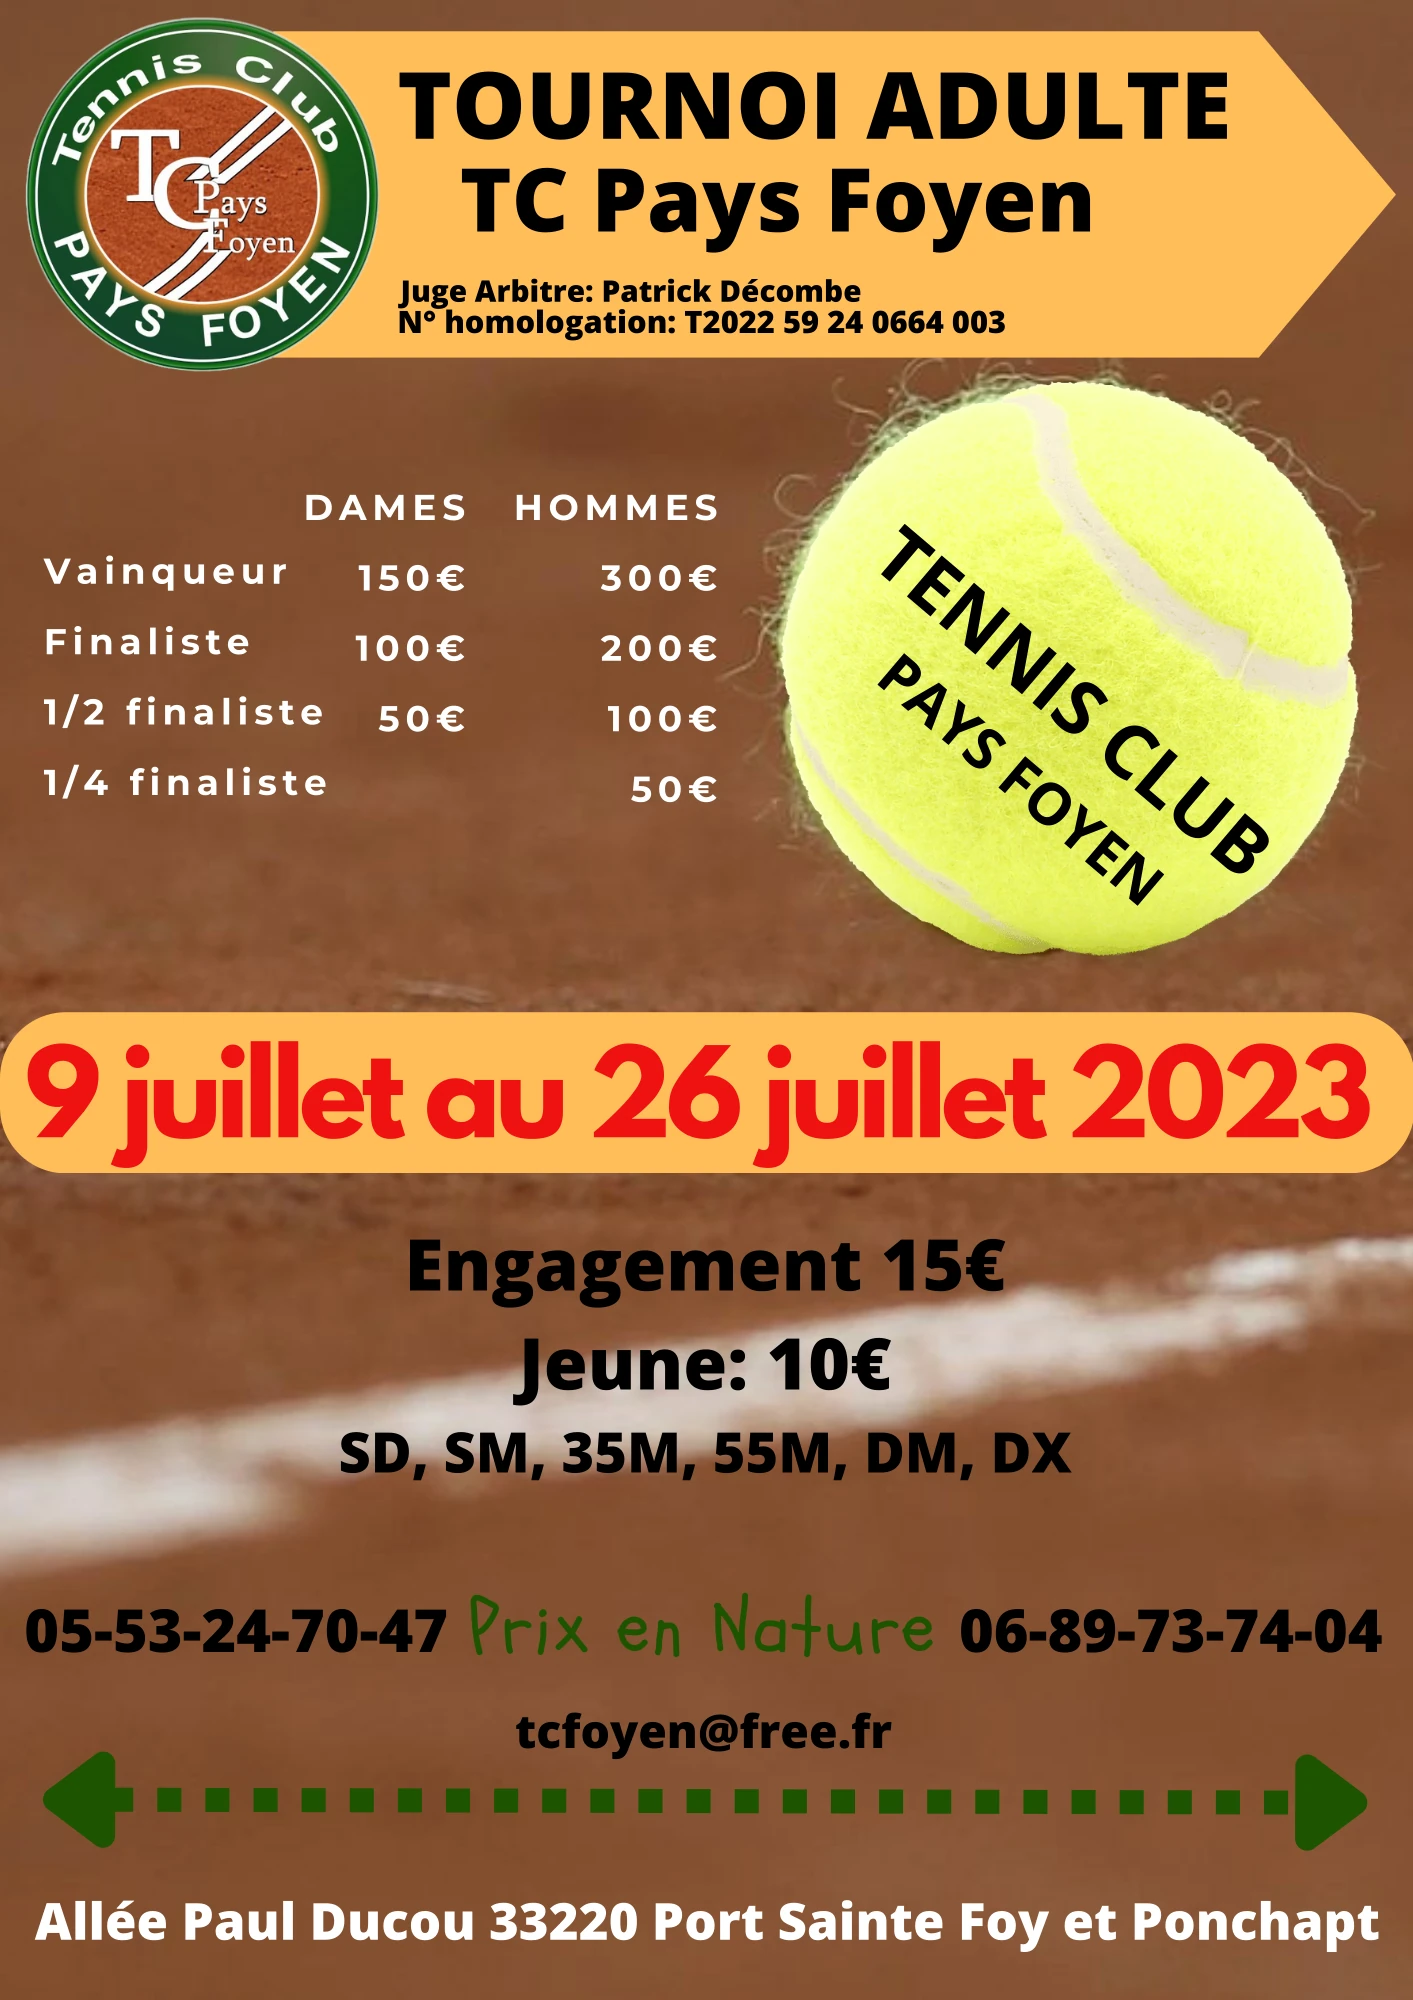 Tournoi de Tennis - TC Pays Foyen - 2023